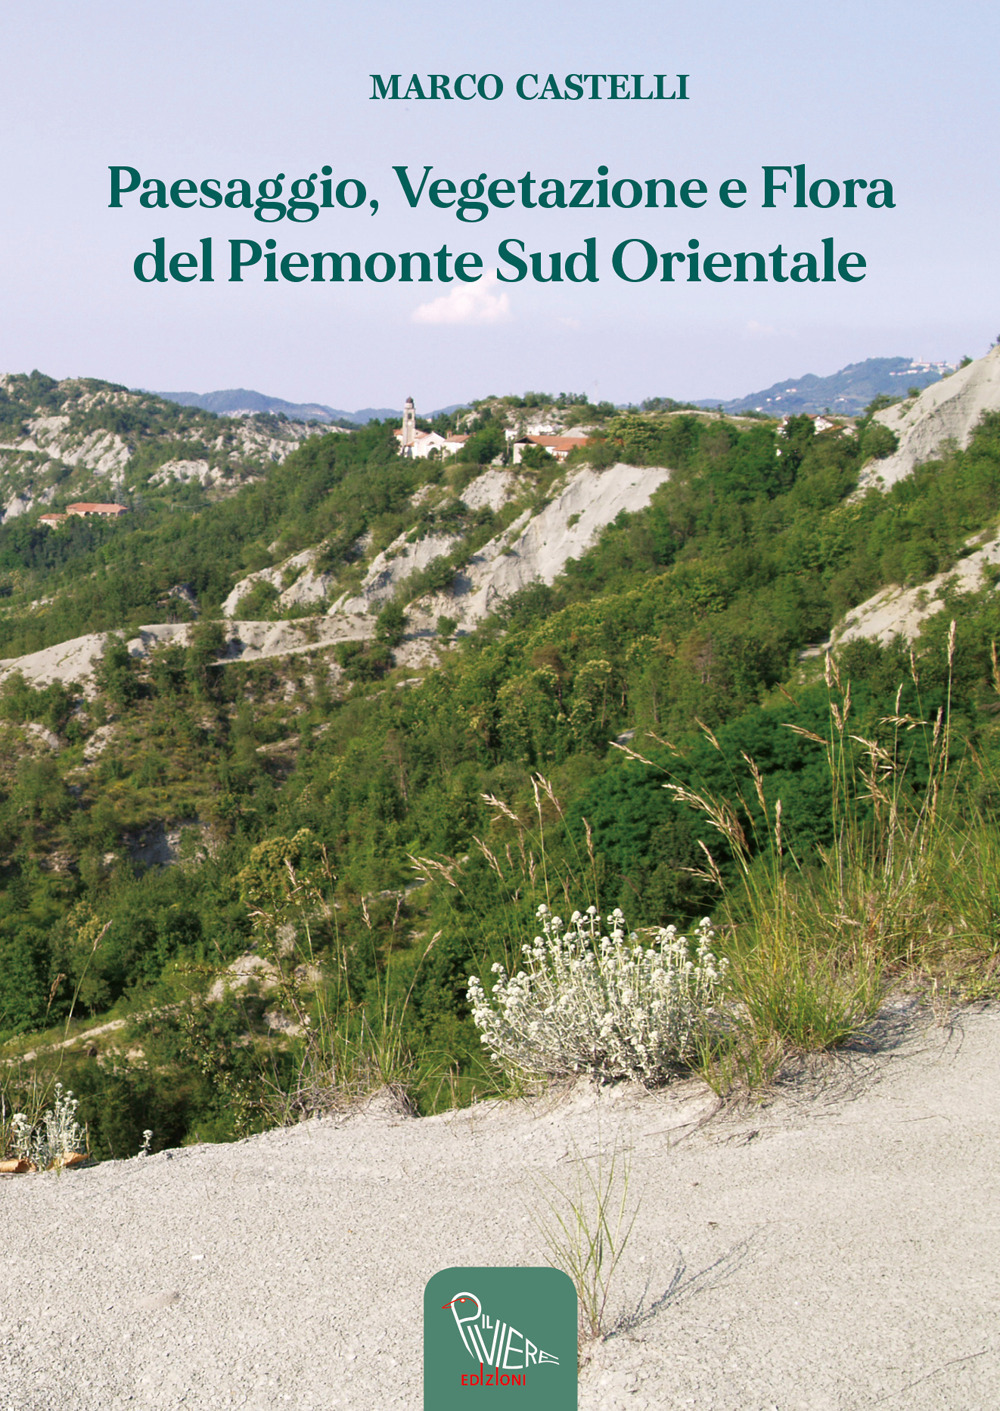 Libri Marco Castelli - Paesaggio, Vegetazione E Flora Del Piemonte Sud Orientale NUOVO SIGILLATO, EDIZIONE DEL 20/08/2022 SUBITO DISPONIBILE